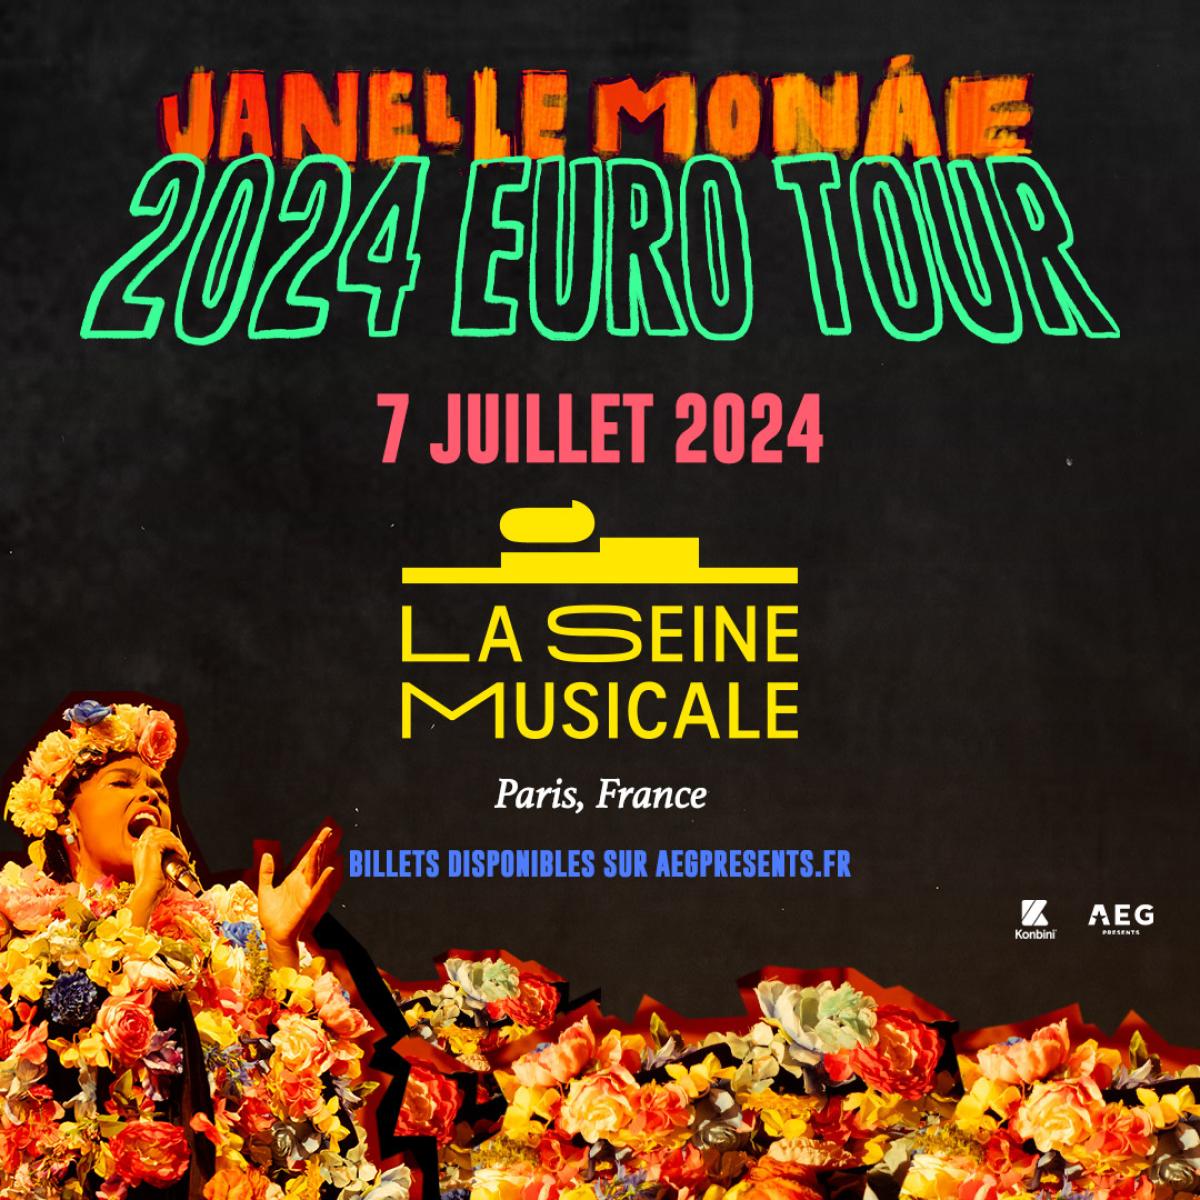 Janelle Monae at La Seine Musicale Tickets